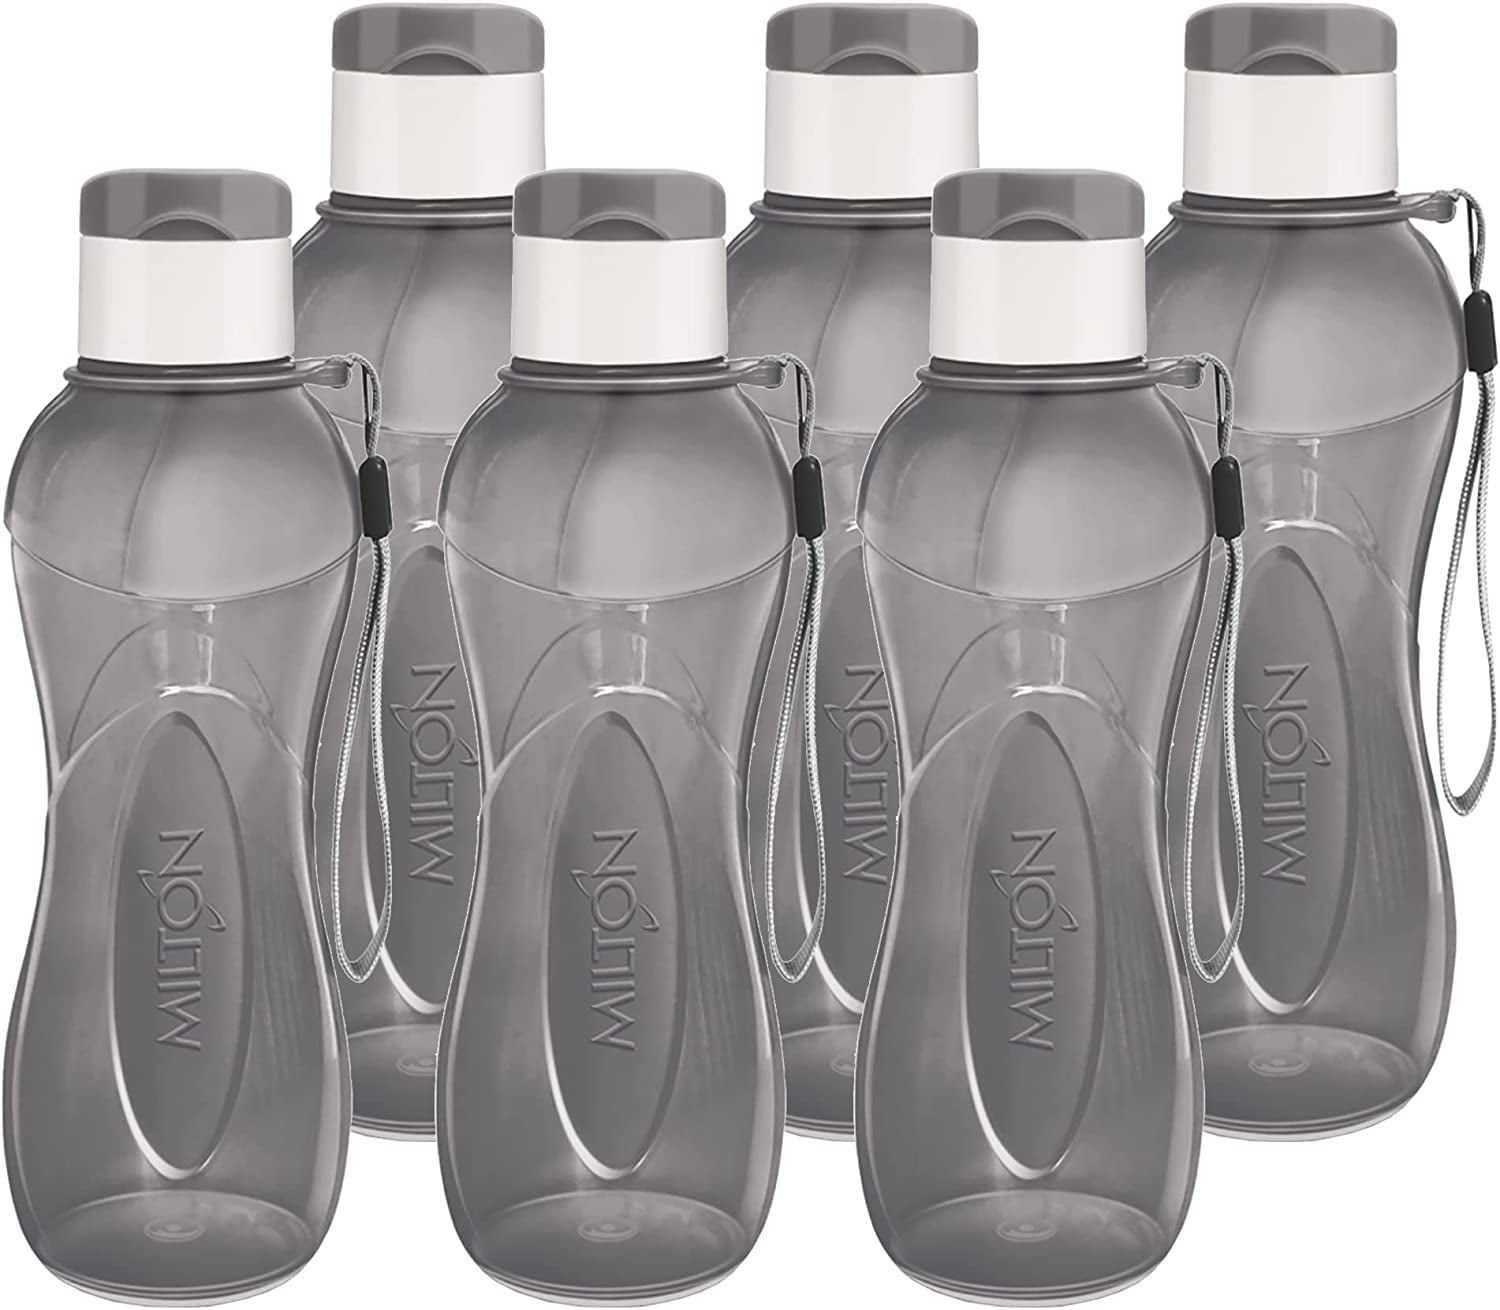 Milton 6-Pc Reusable Water Bottles Bulk Pack 12 oz Plastic Bottles with Caps, Blue, Size: 12oz